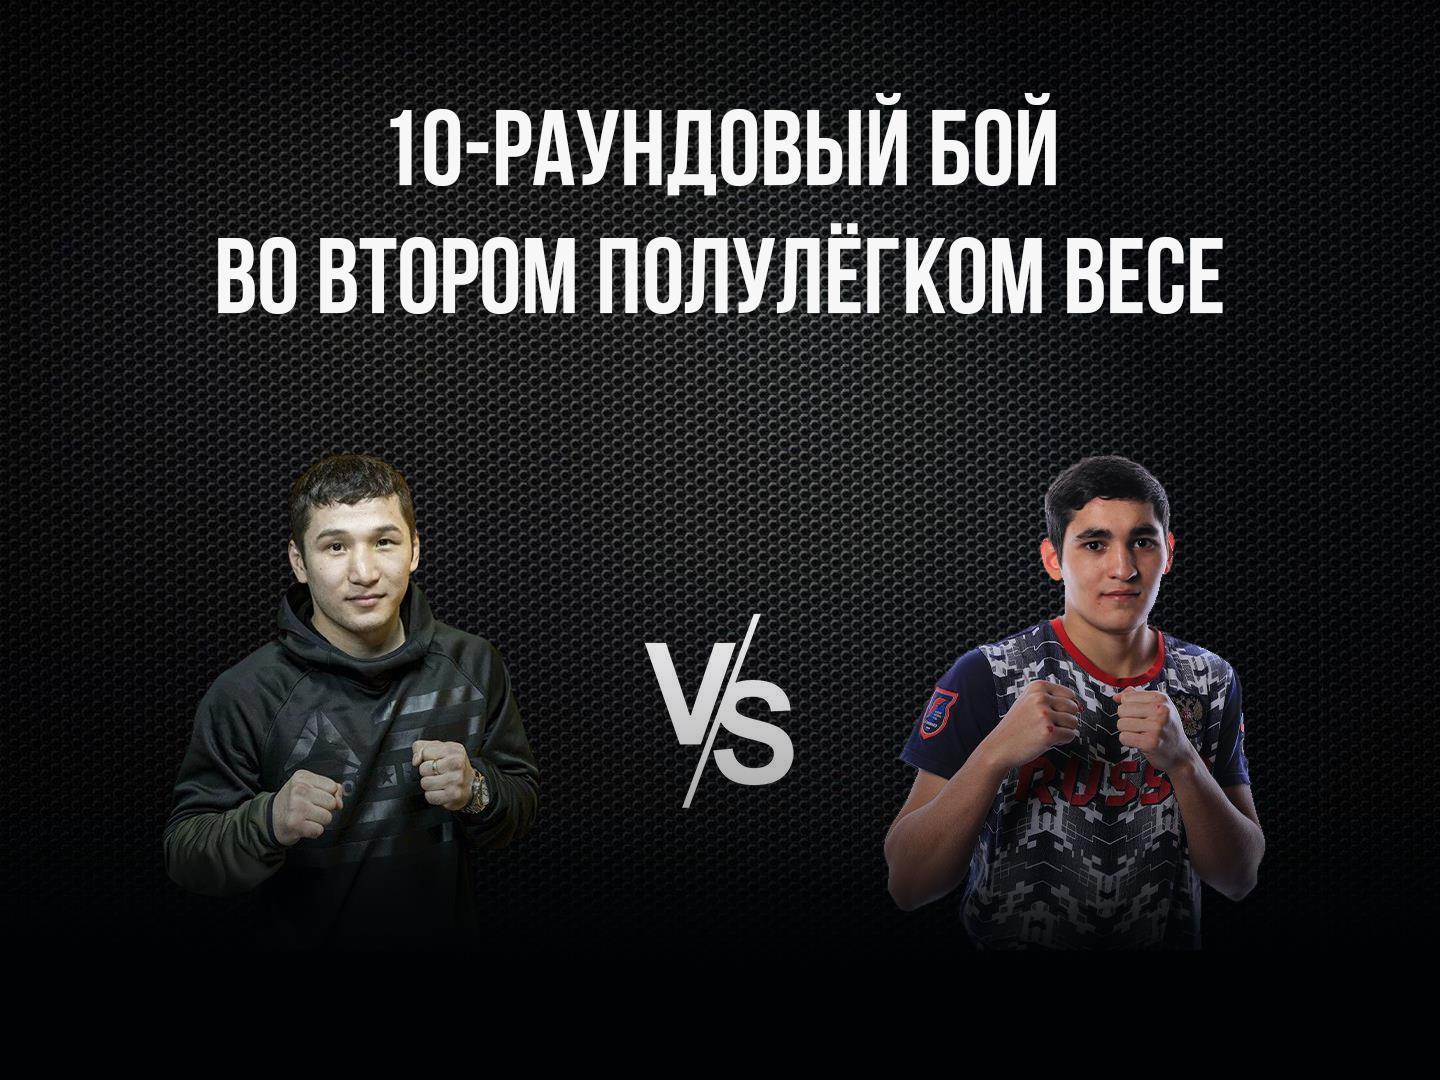 10-раундовый бой во втором полулегком весе (до 58,9 кг). Эржан Тургумбеков (Кыргызстан) - Альберт Батыргазиев (Россия)